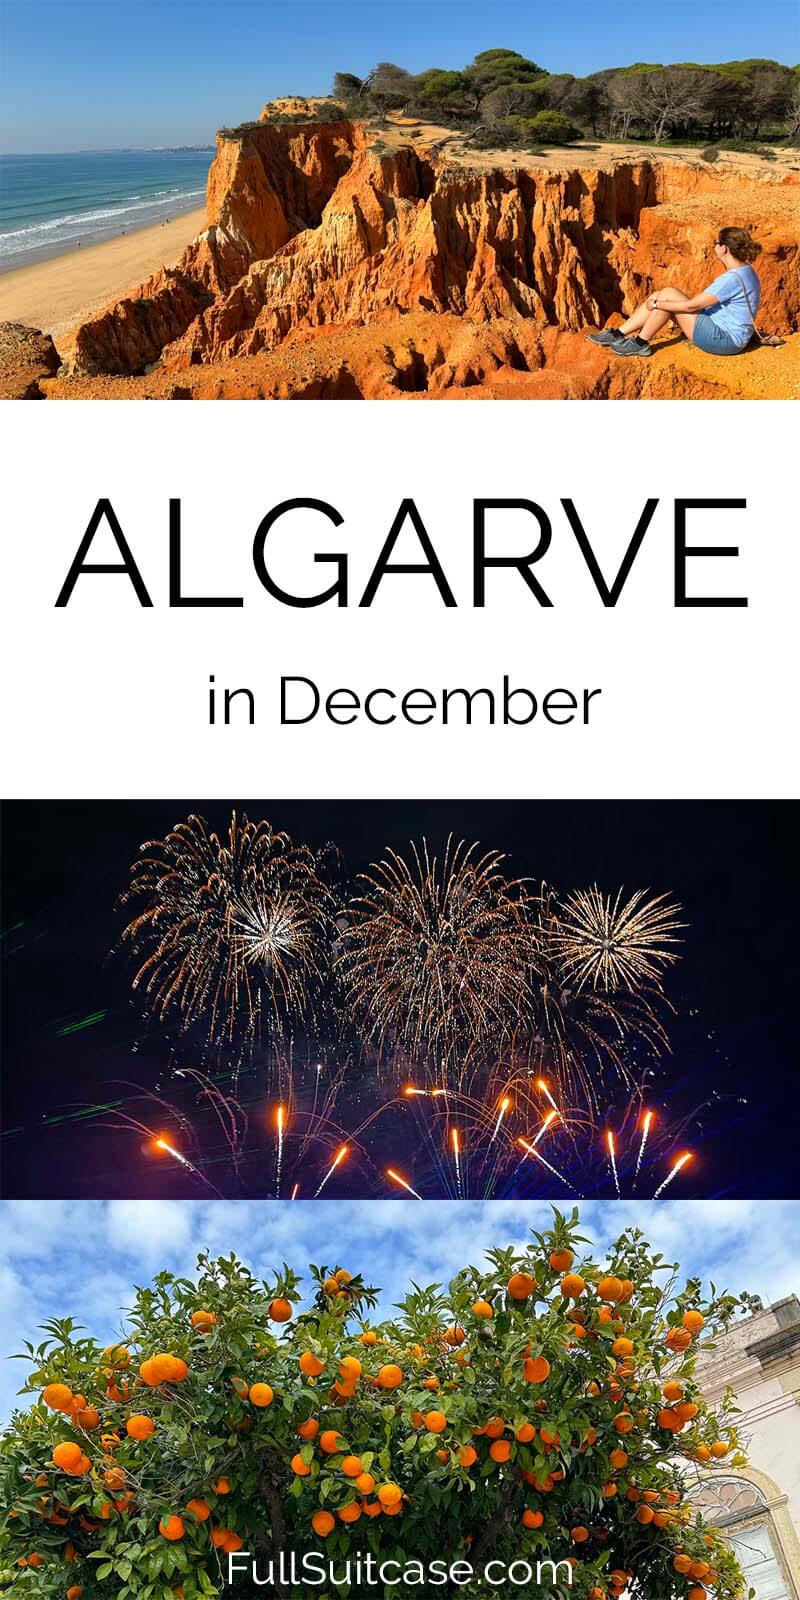 December travel guide to Algarve in Portugal